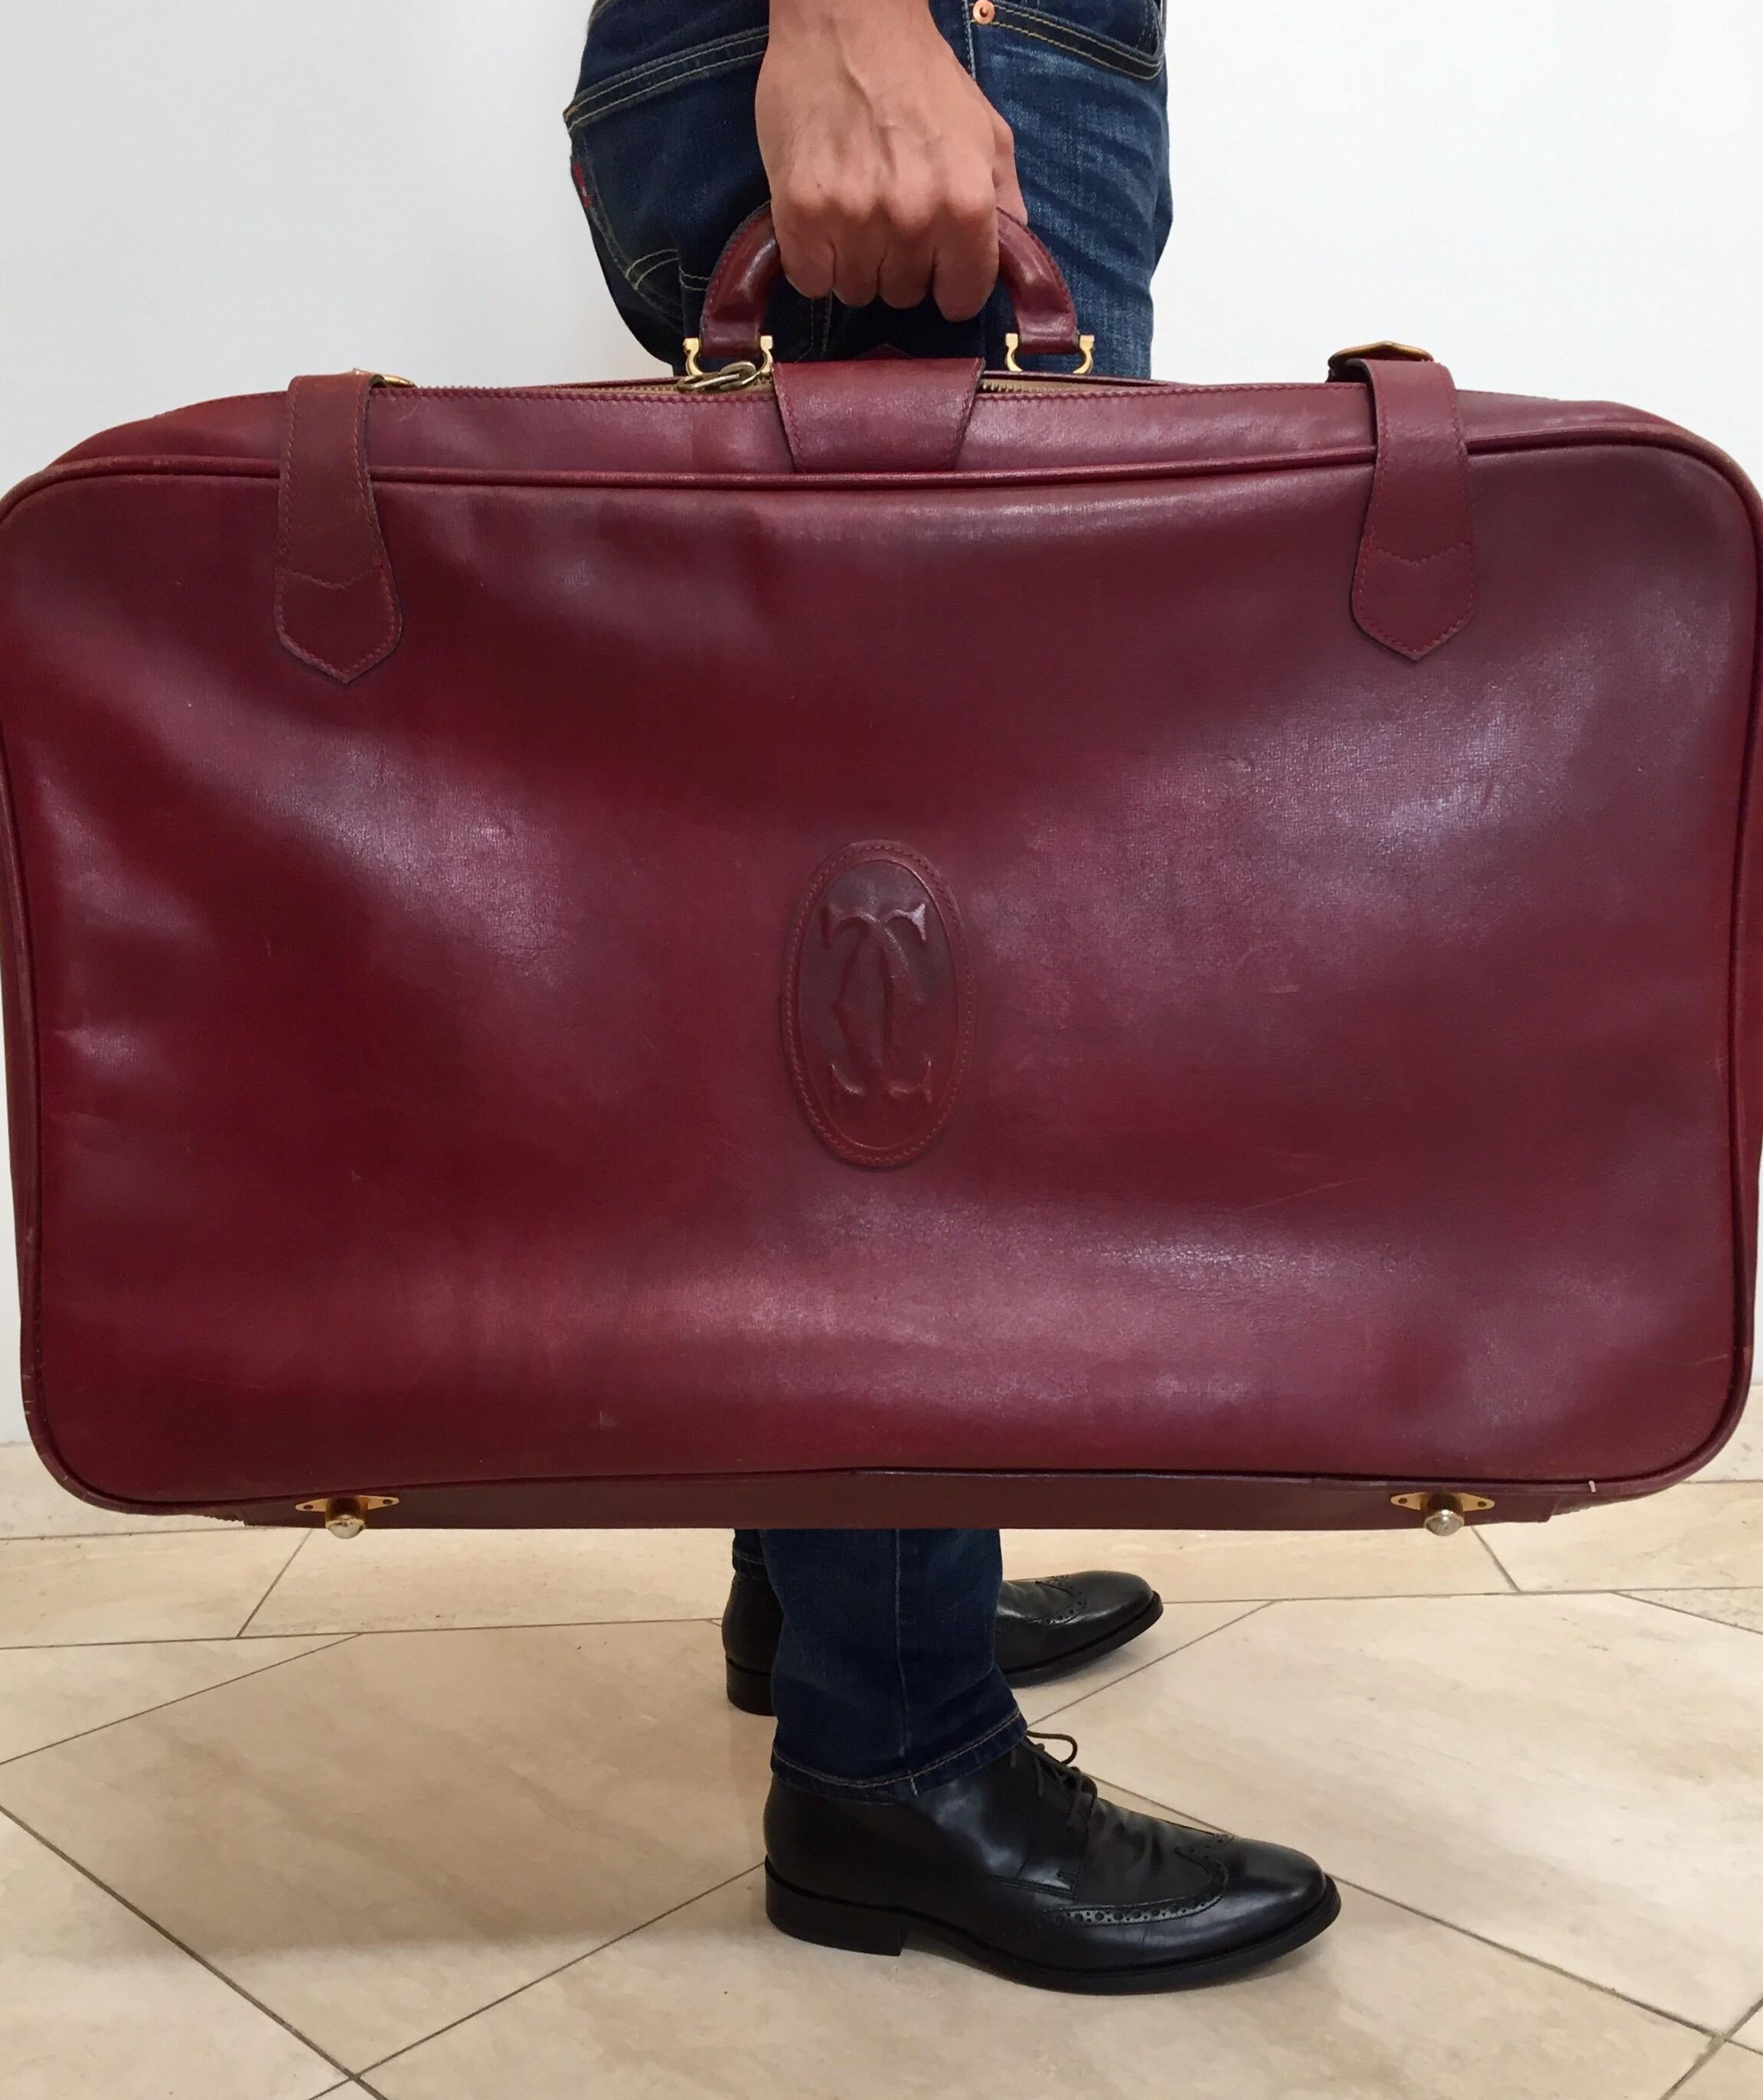 Les Must de Cartier Vintage Leather Suitcase Burgundy Bordeaux Luggage For Sale 6